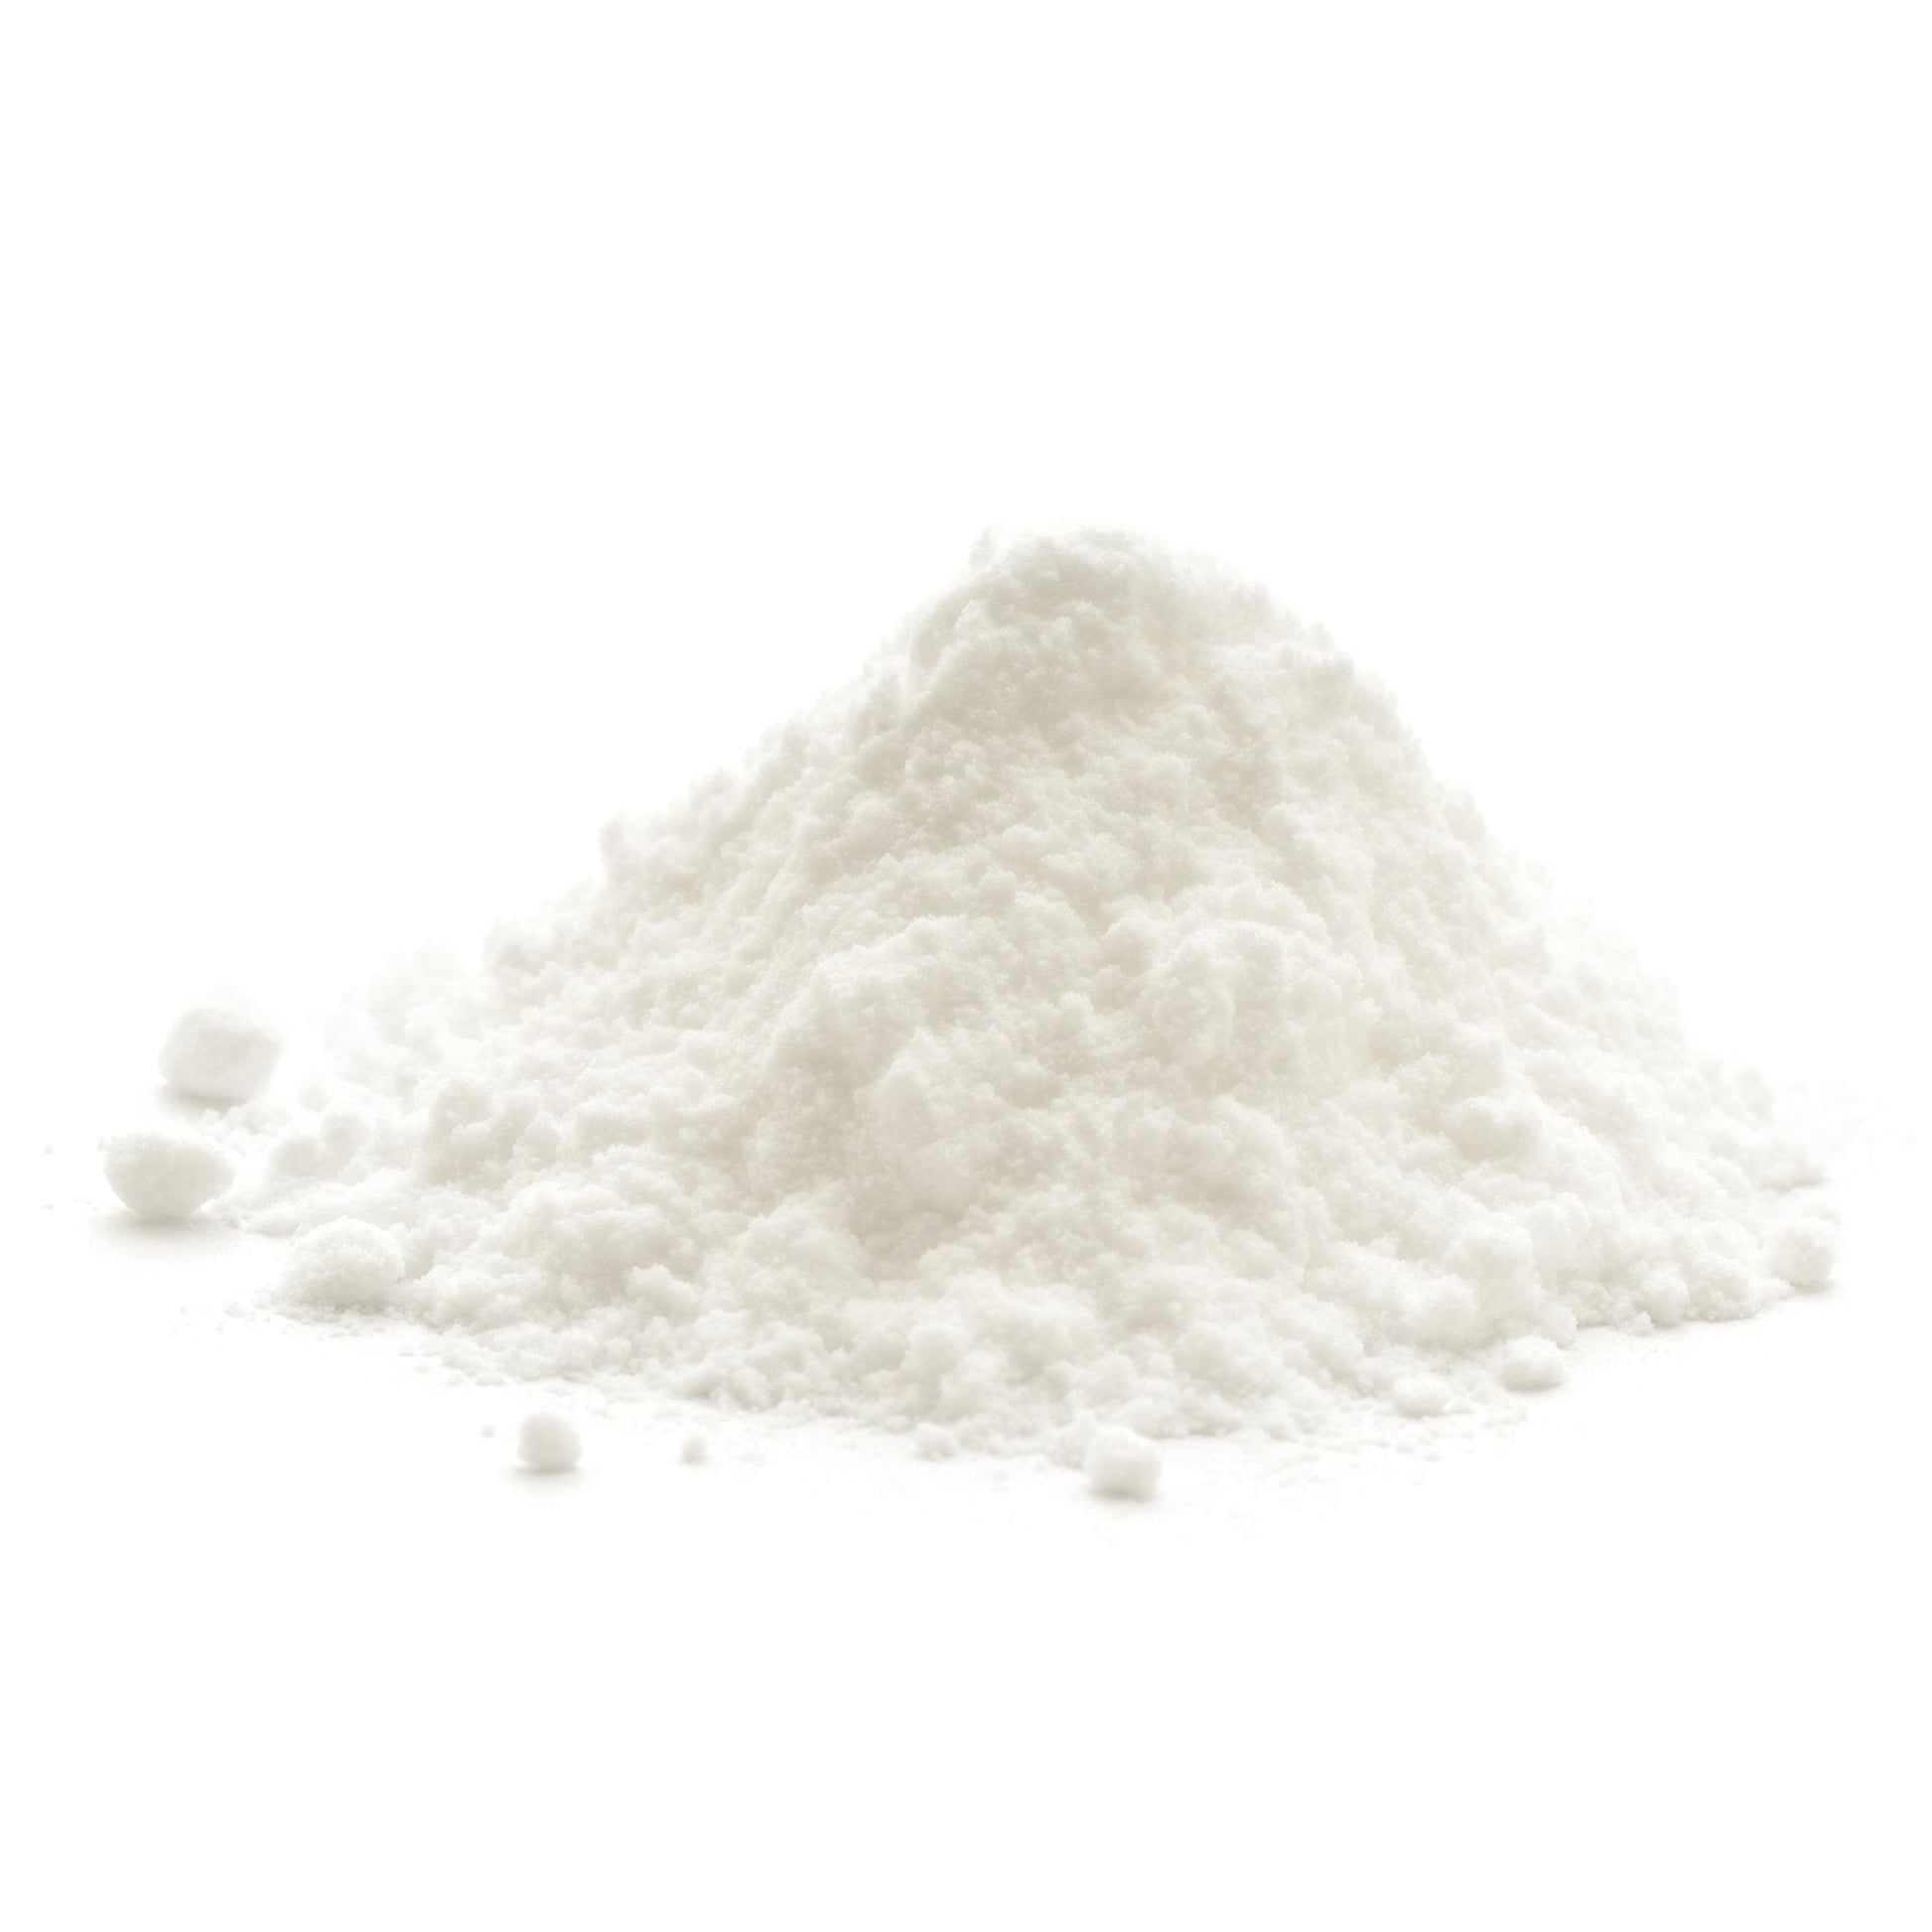 Baking Soda Sodium Bicarbonate - 2 lb and 50 lb in Bulk – Bakers